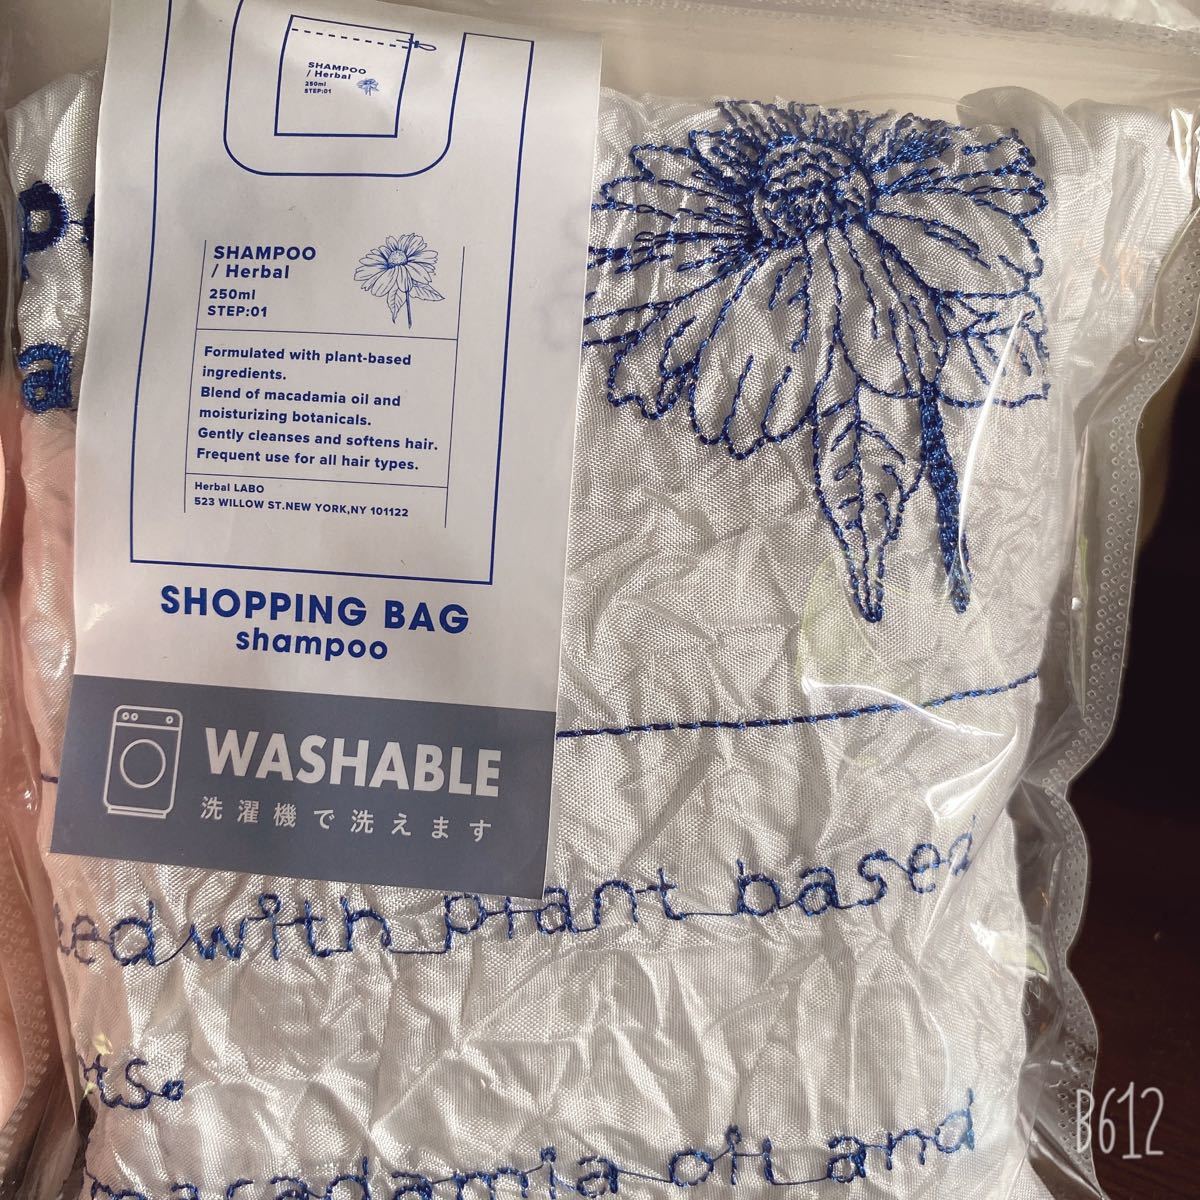 エコバッグ 折りたたみコンパクト 刺繍 レジ袋 マチ広 軽量 洗濯可能 買い物袋 買い物バッグ ショッピングバッグ シワエコ